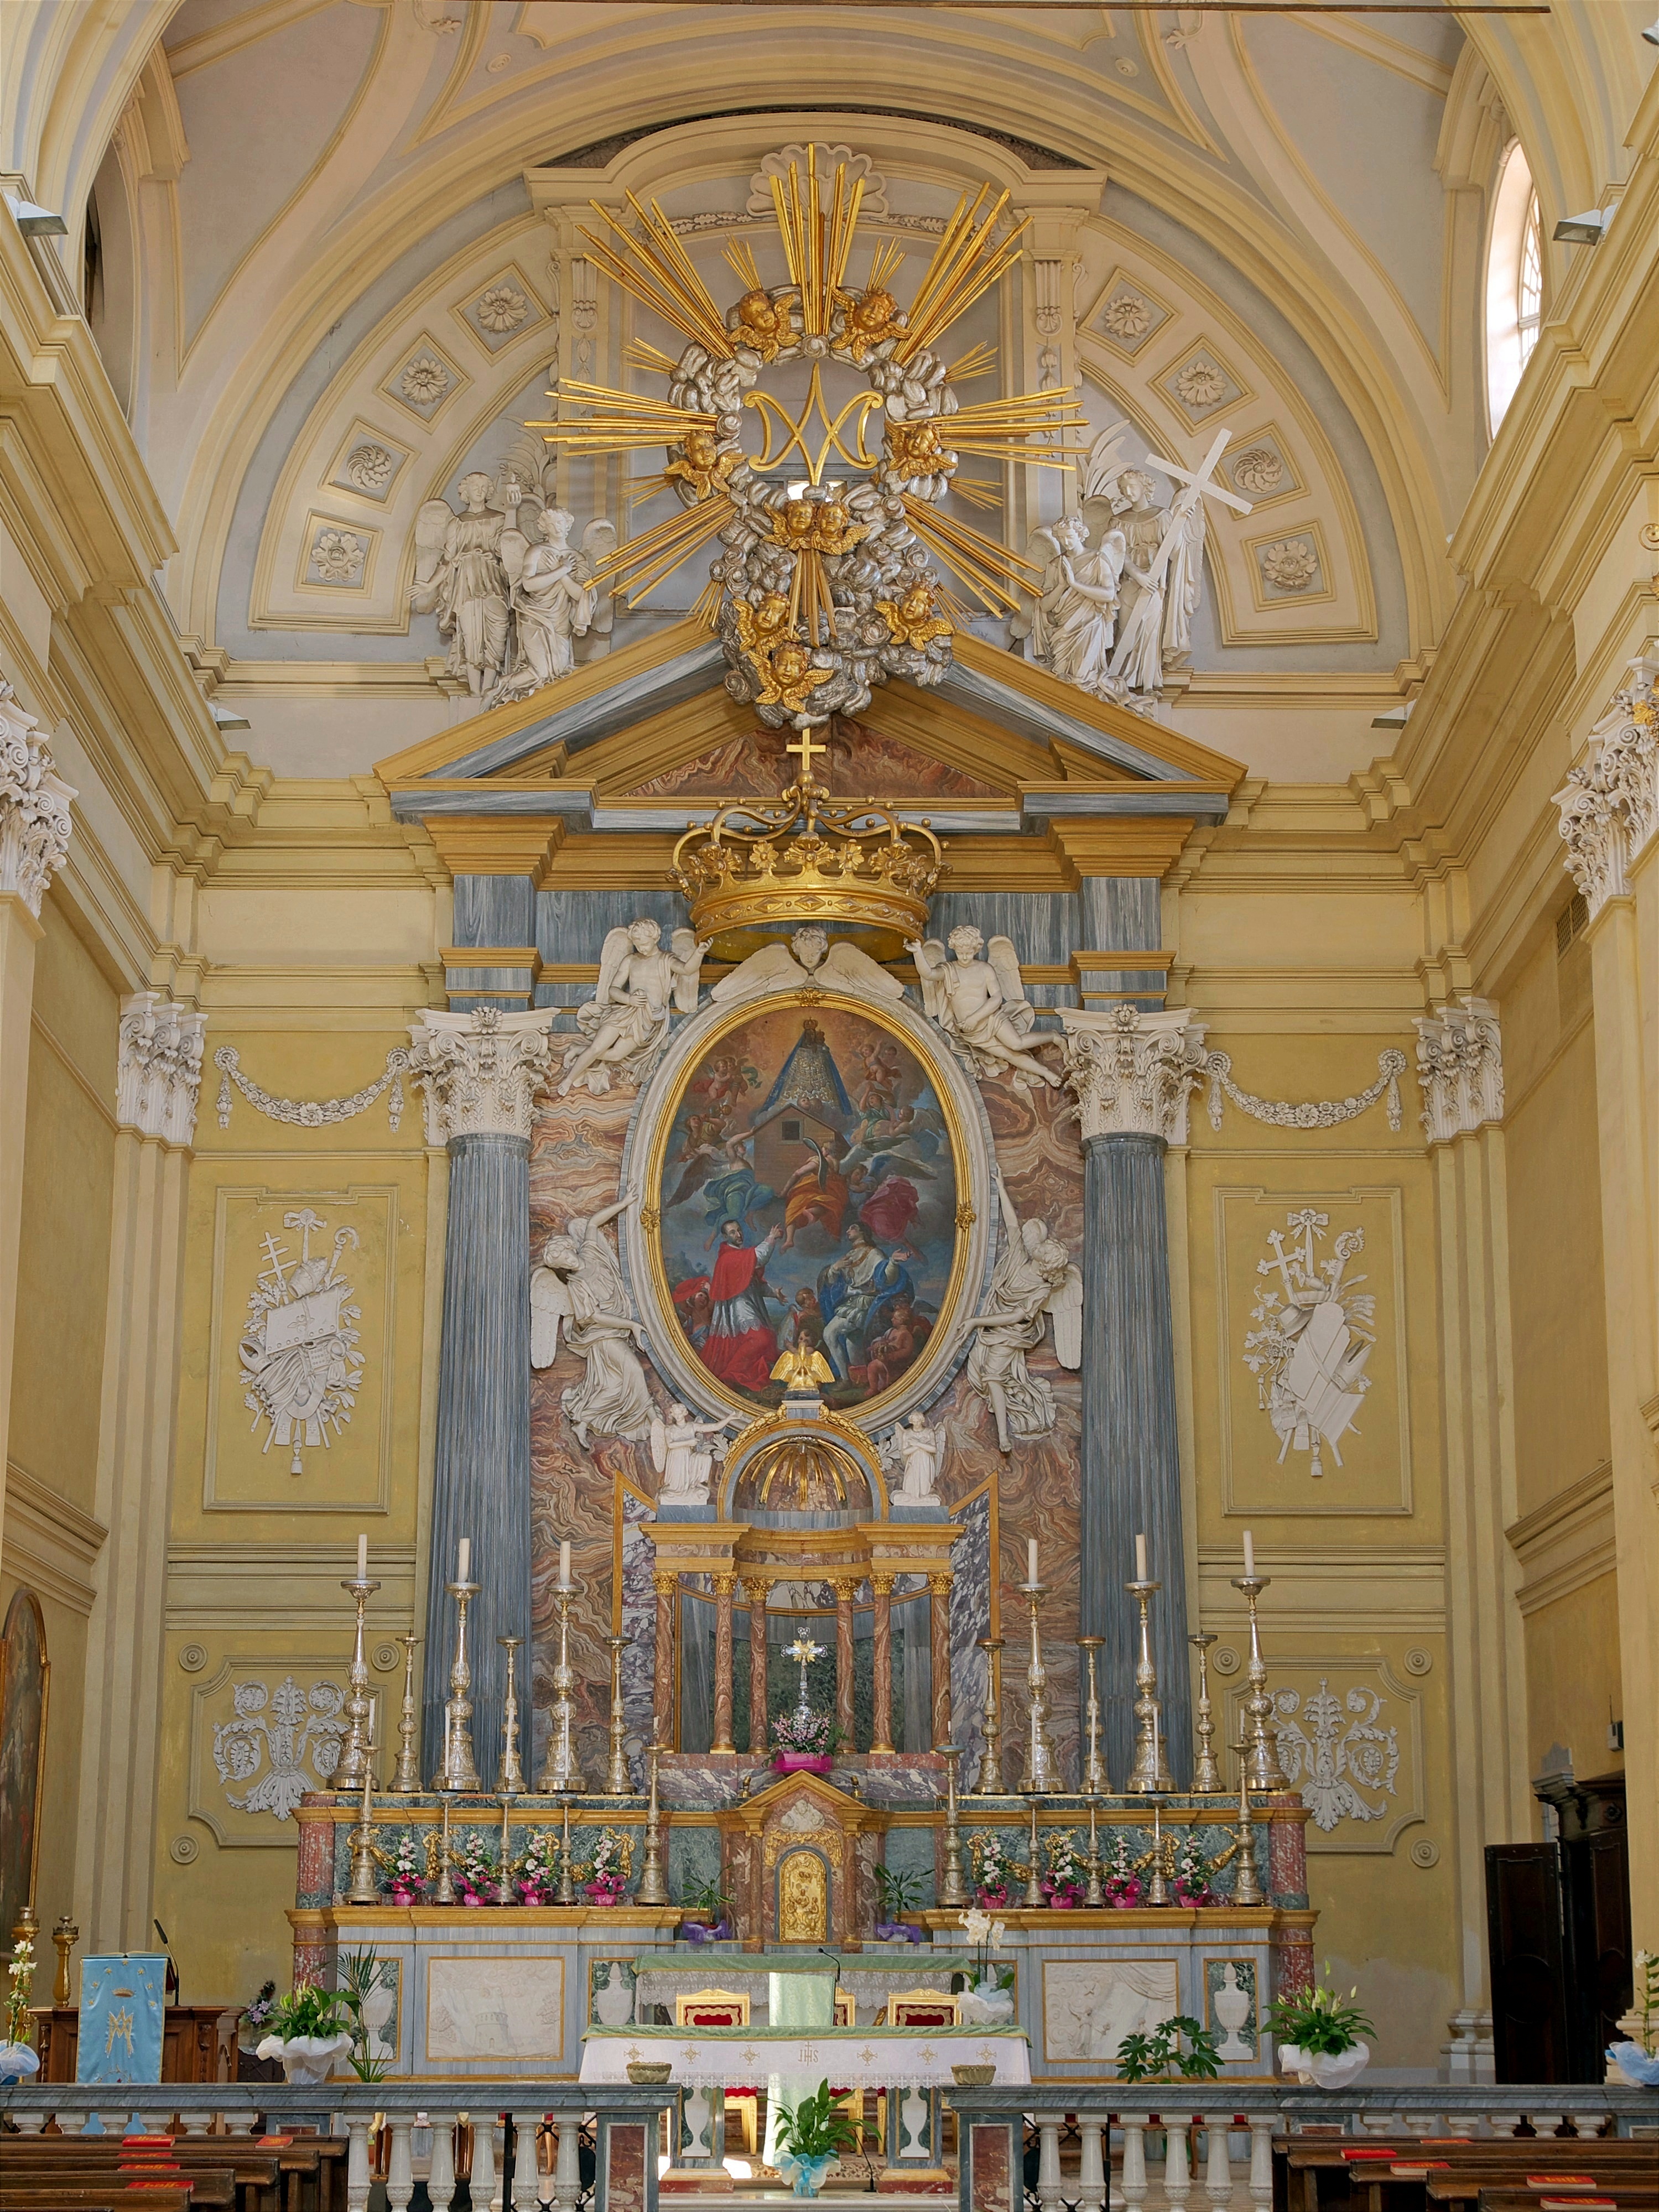 Graglia (Biella): Altare maggiore della chiesa del Santuario della Madonna di Loreto - Graglia (Biella)